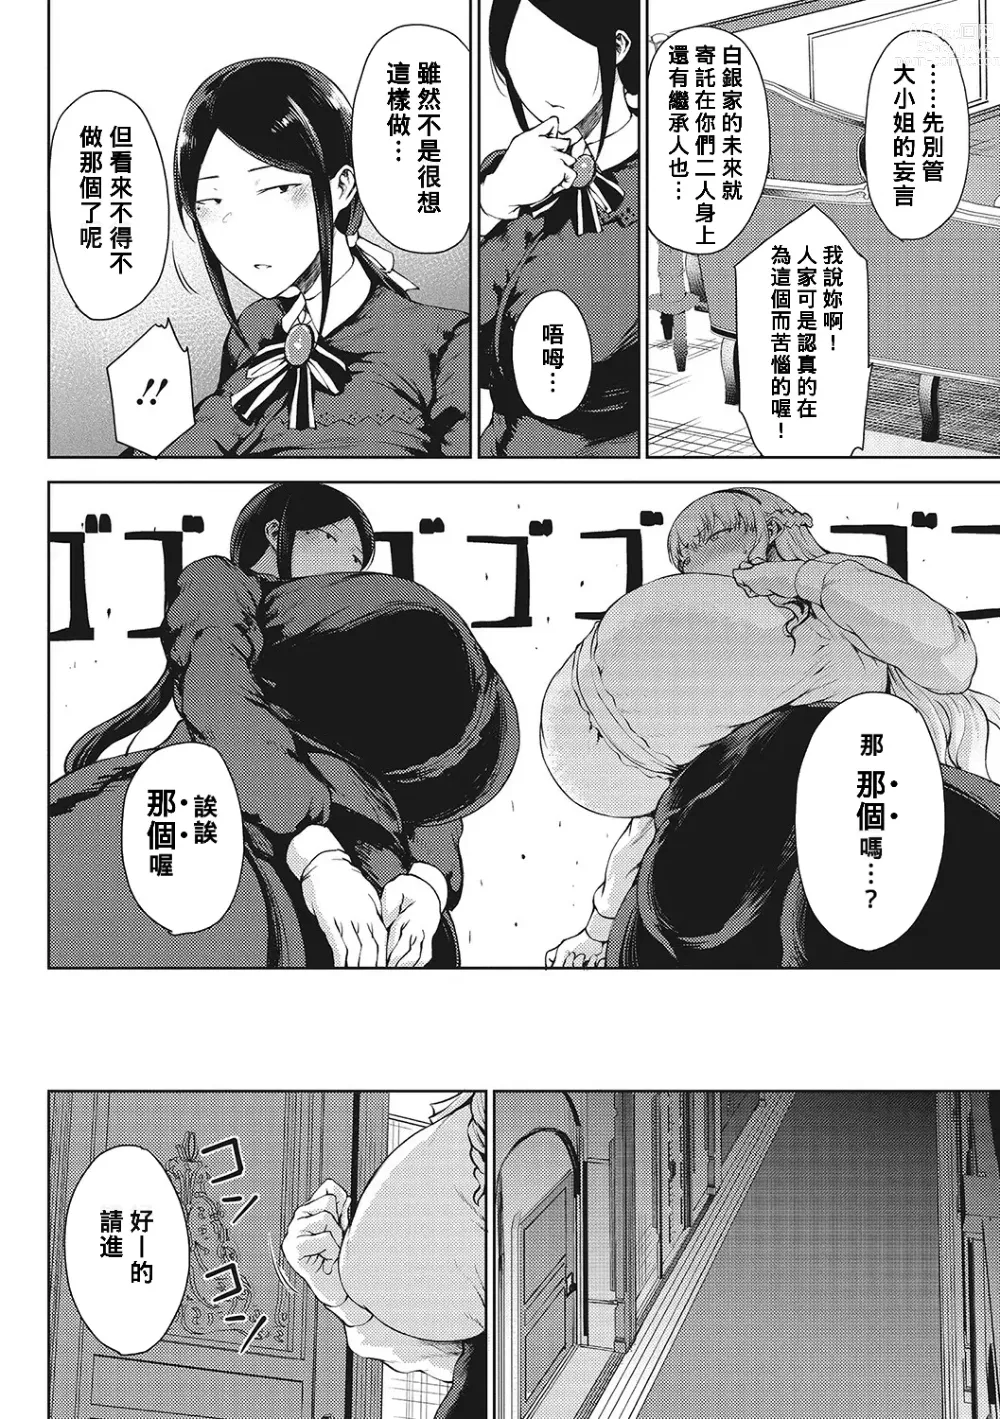 Page 6 of manga Saitan no Yakusoku Zenpen